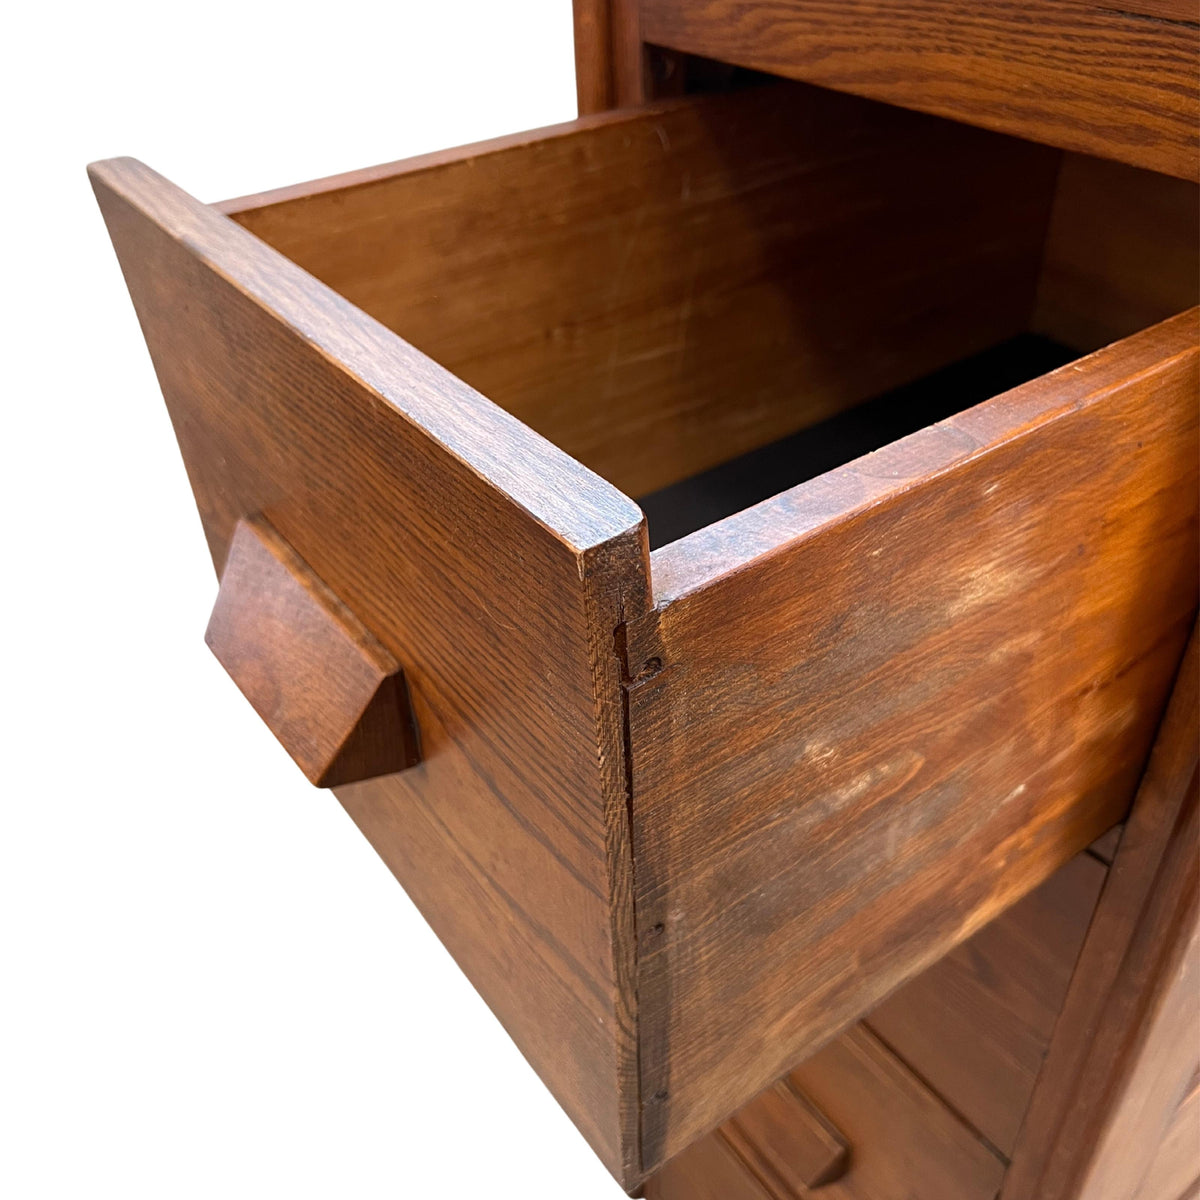 Vintage Oak Filing Cabinet